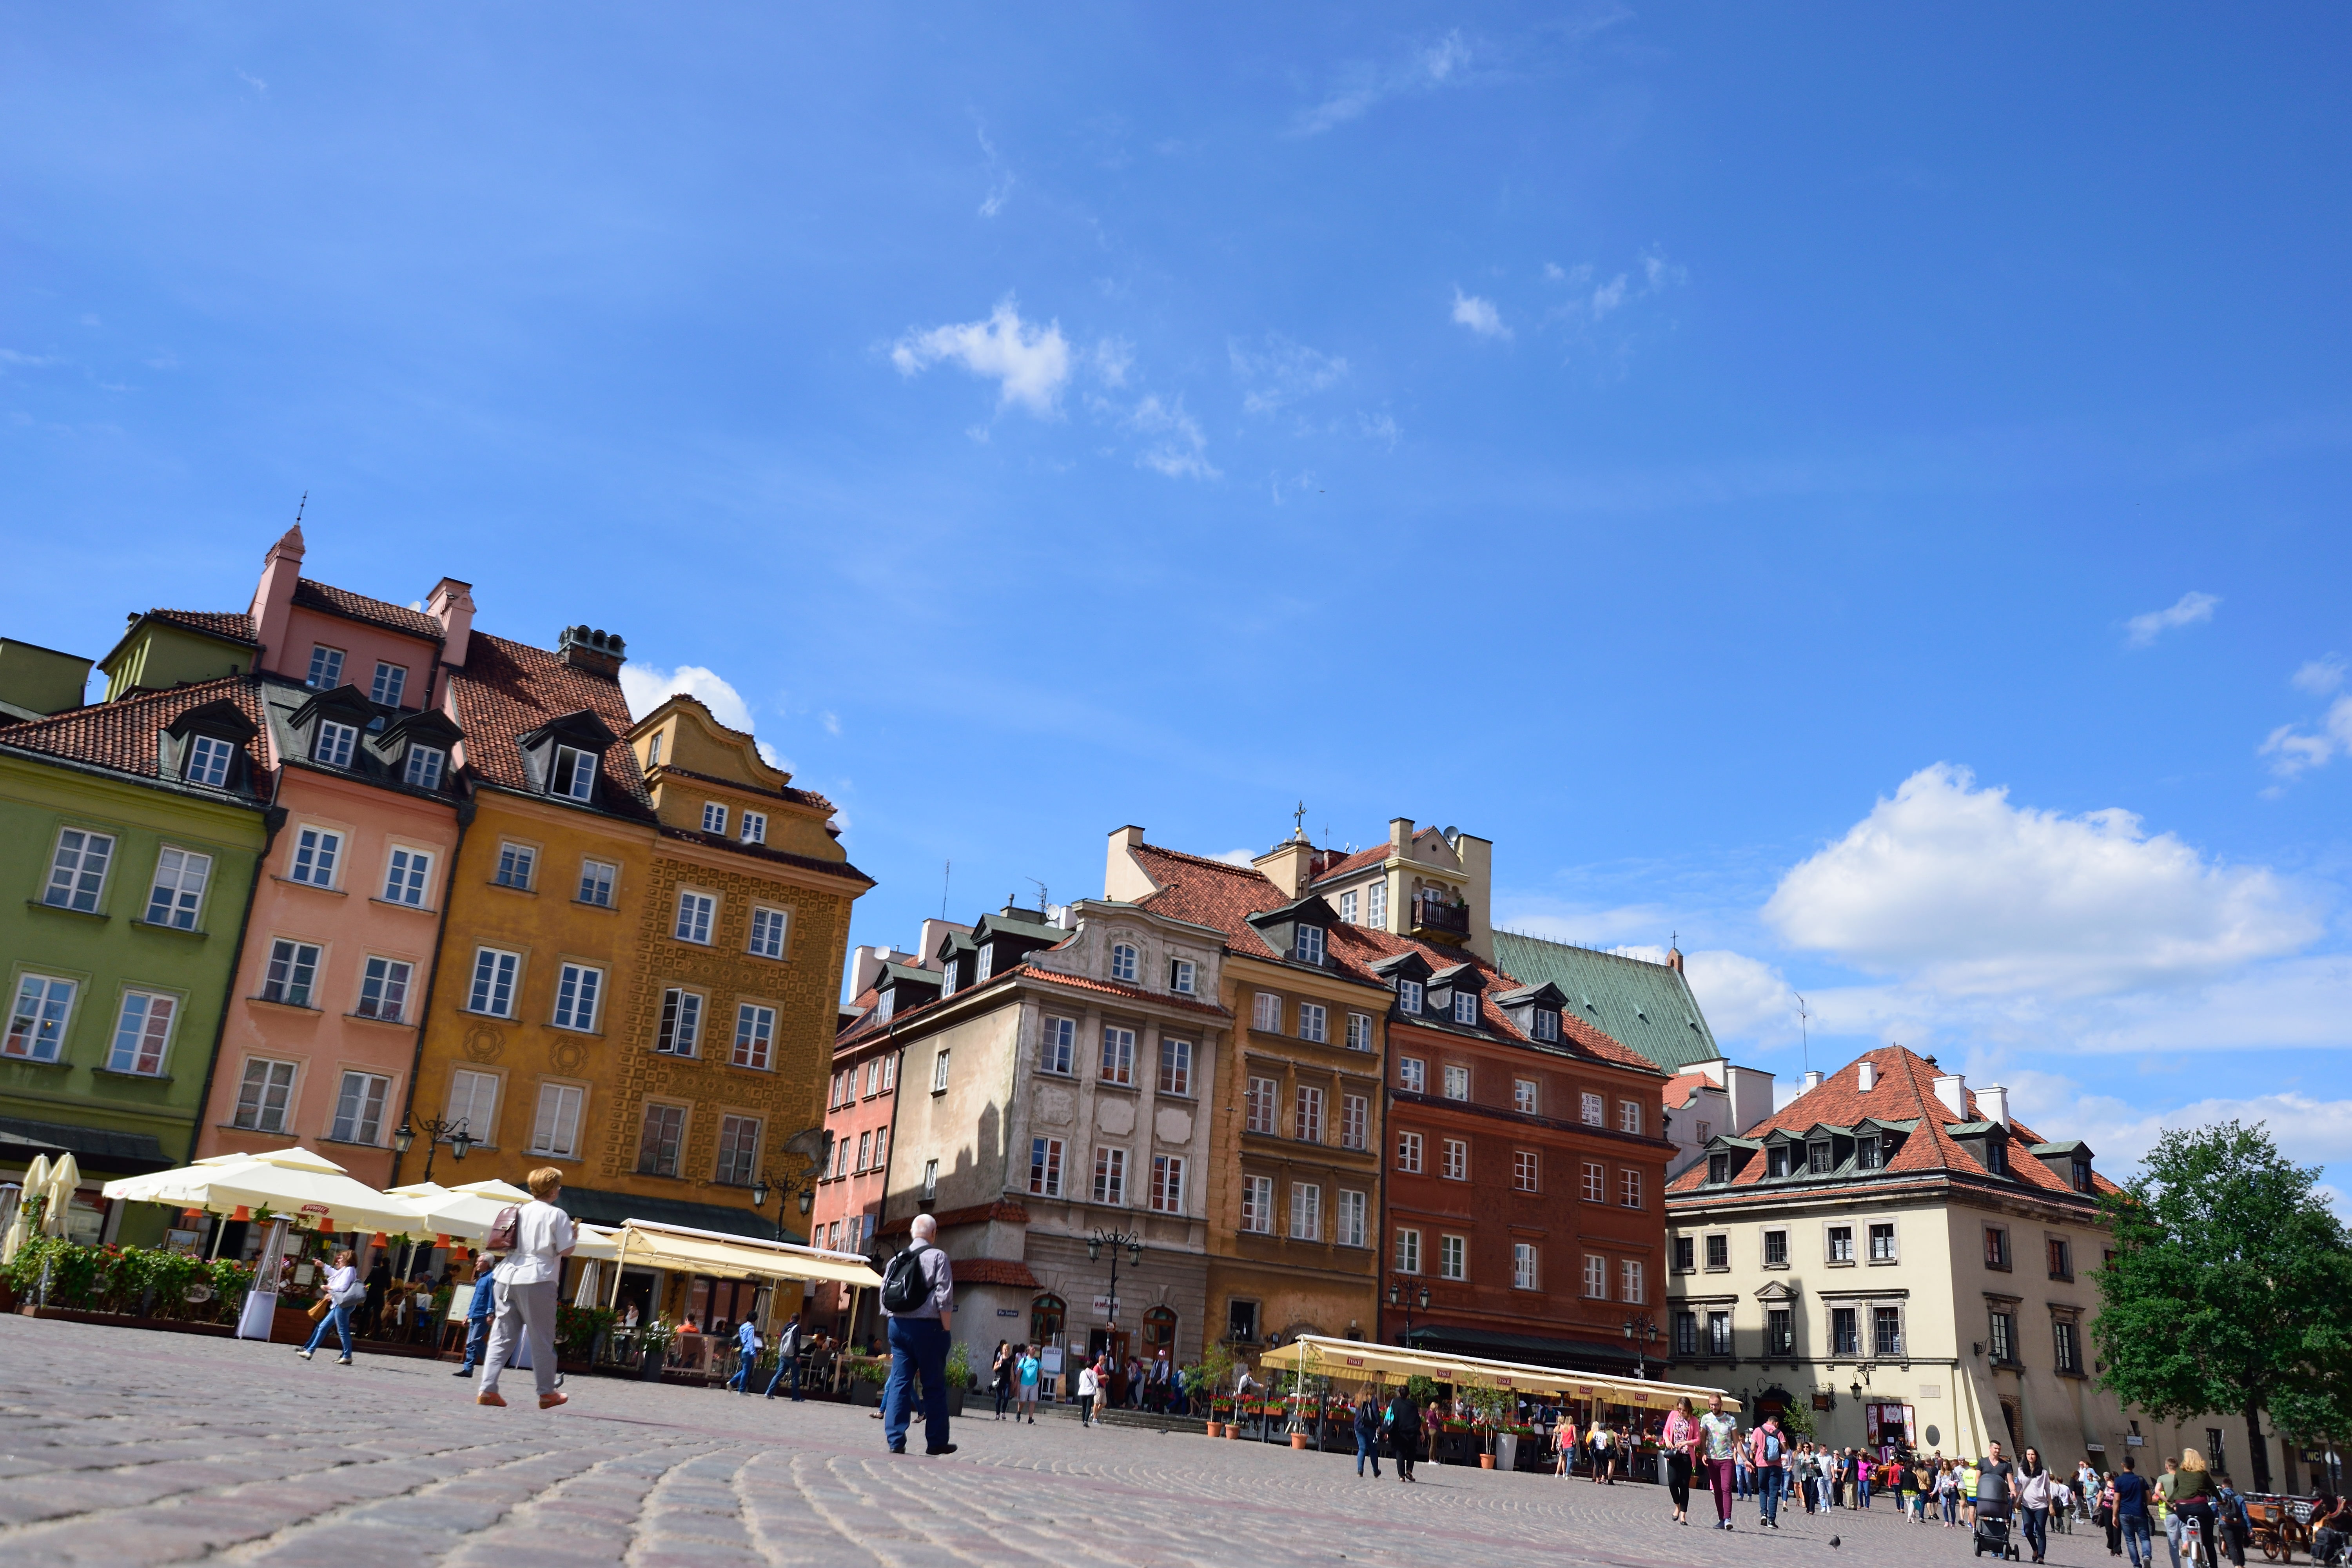 「再生された街」ポーランドの首都ワルシャワを観光(旅行記1/5Days)